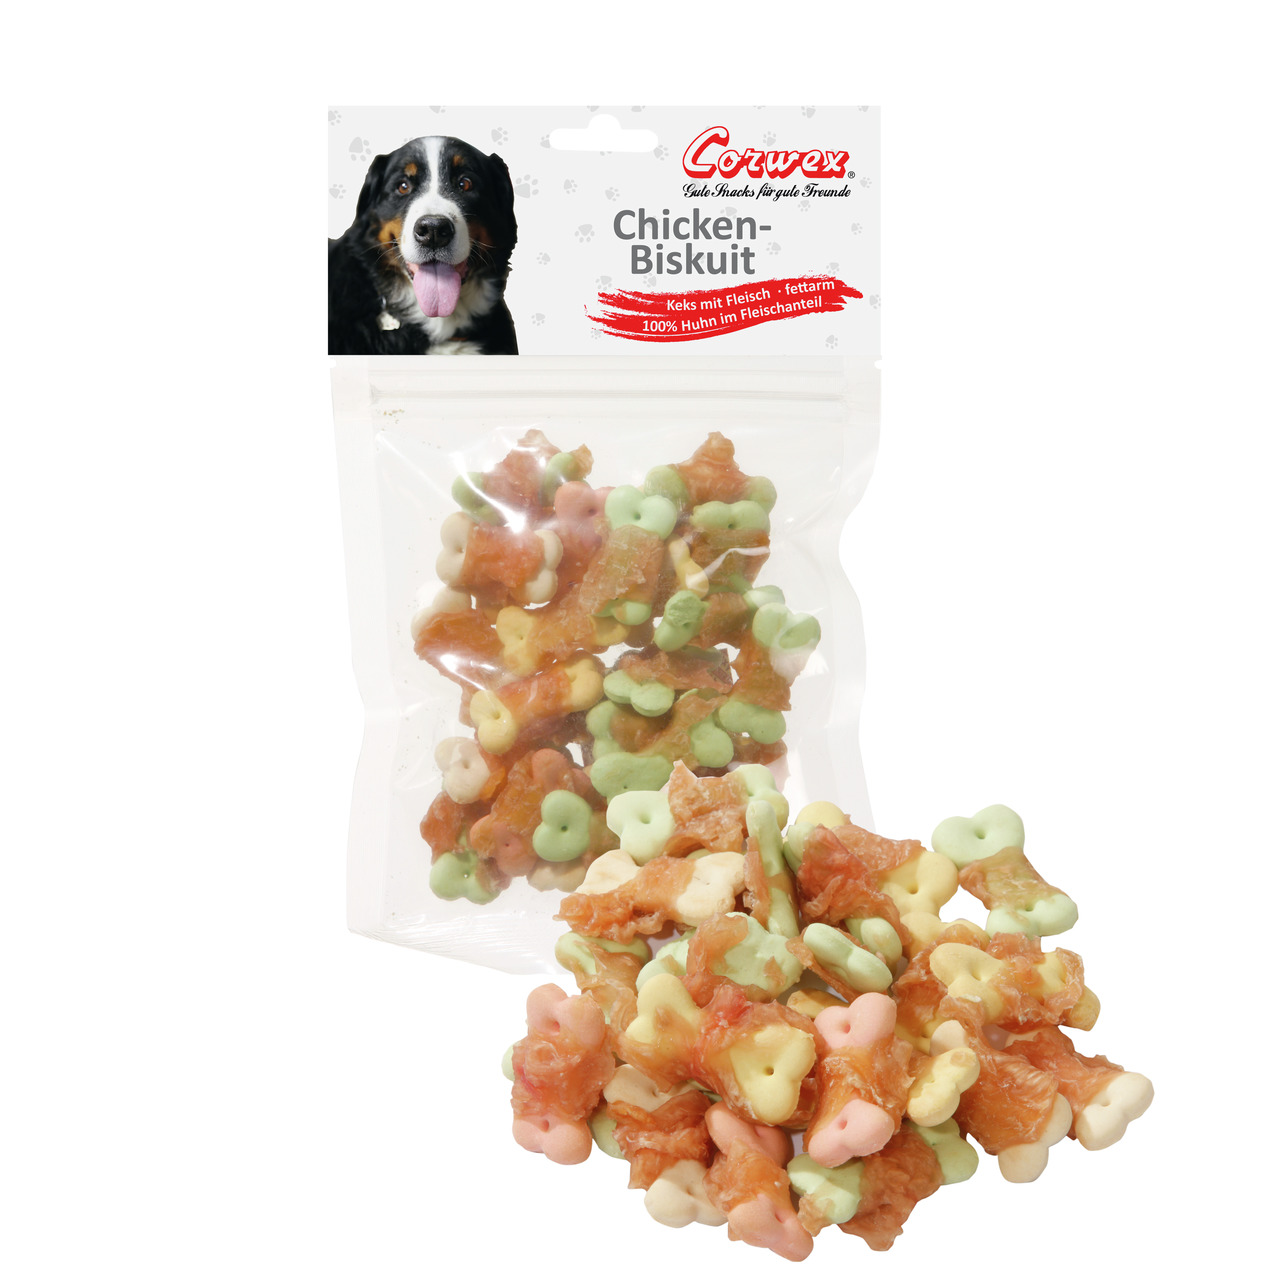 Sparpaket 2 x 70 g Corwex Chicken-Biskuit Hunde Snack